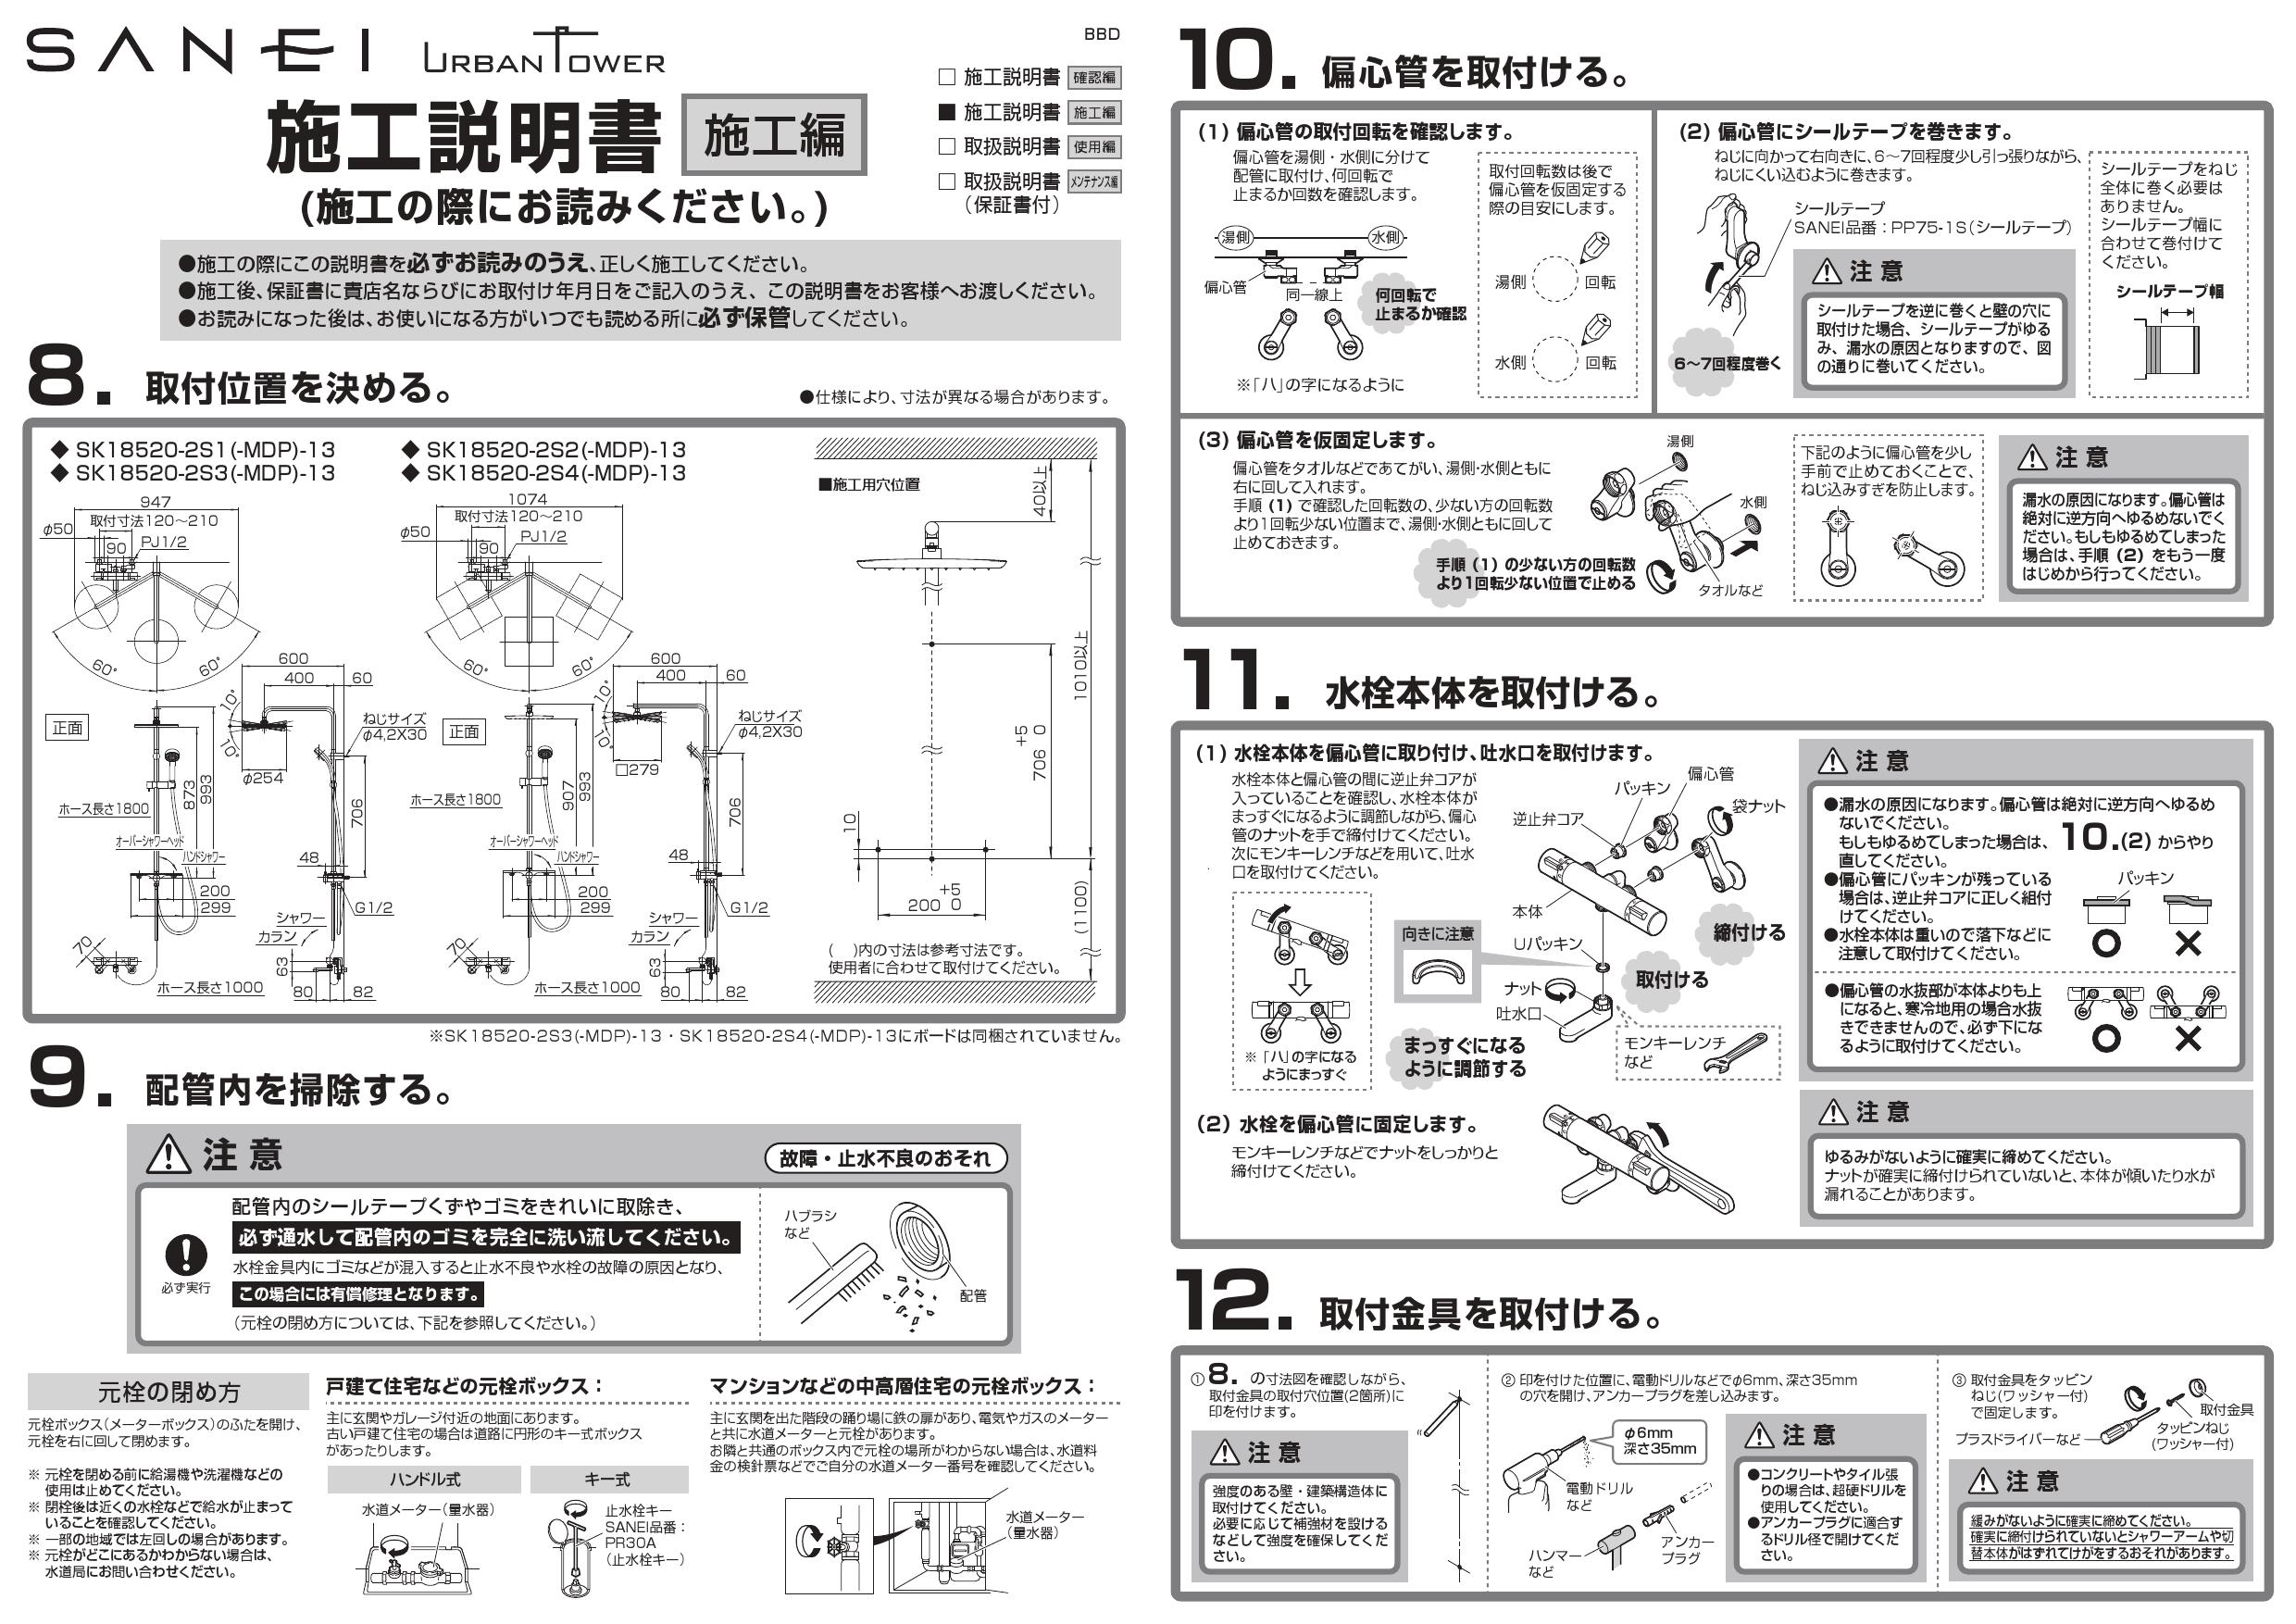 SANEI SK18520-2S3-MDP-13取扱説明書 商品図面 | 通販 プロストア ダイレクト